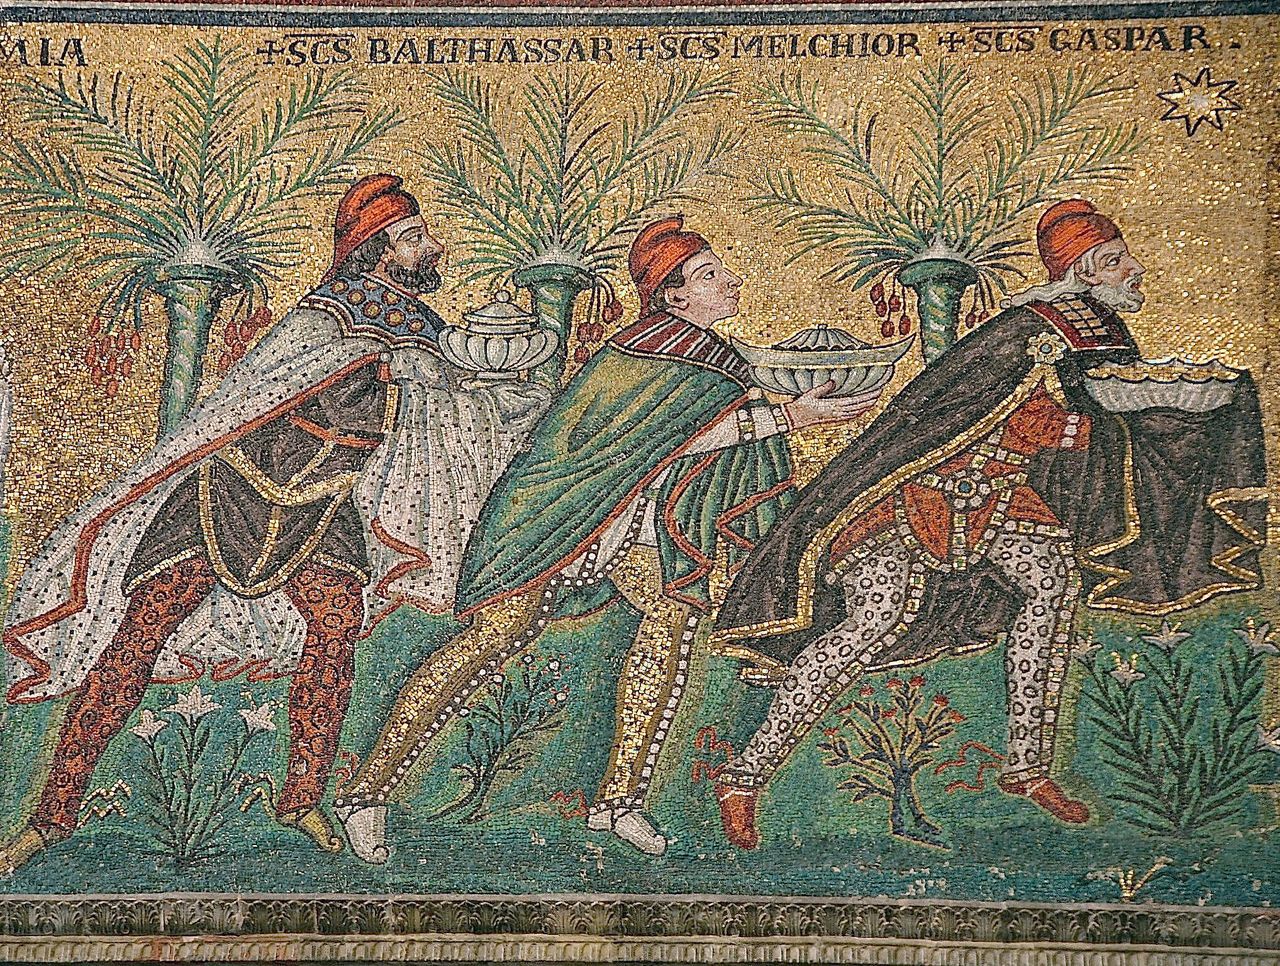 Οι Τρεις Μάγοι σε βυζαντινό ψηφιδωτό στη νέα βασιλική του Αγίου Απολλιναρίου, στη Ραβέννα (περ. 565, αποκαταστάθηκε τον 18ο αιώνα). Στη βυζαντινή τέχνη οι Μάγοι απεικονίζονται συνήθως όπως εδώ, με περσική ενδυμασία, που περιλαμβάνει κάπες και φρυγικούς σκούφους.